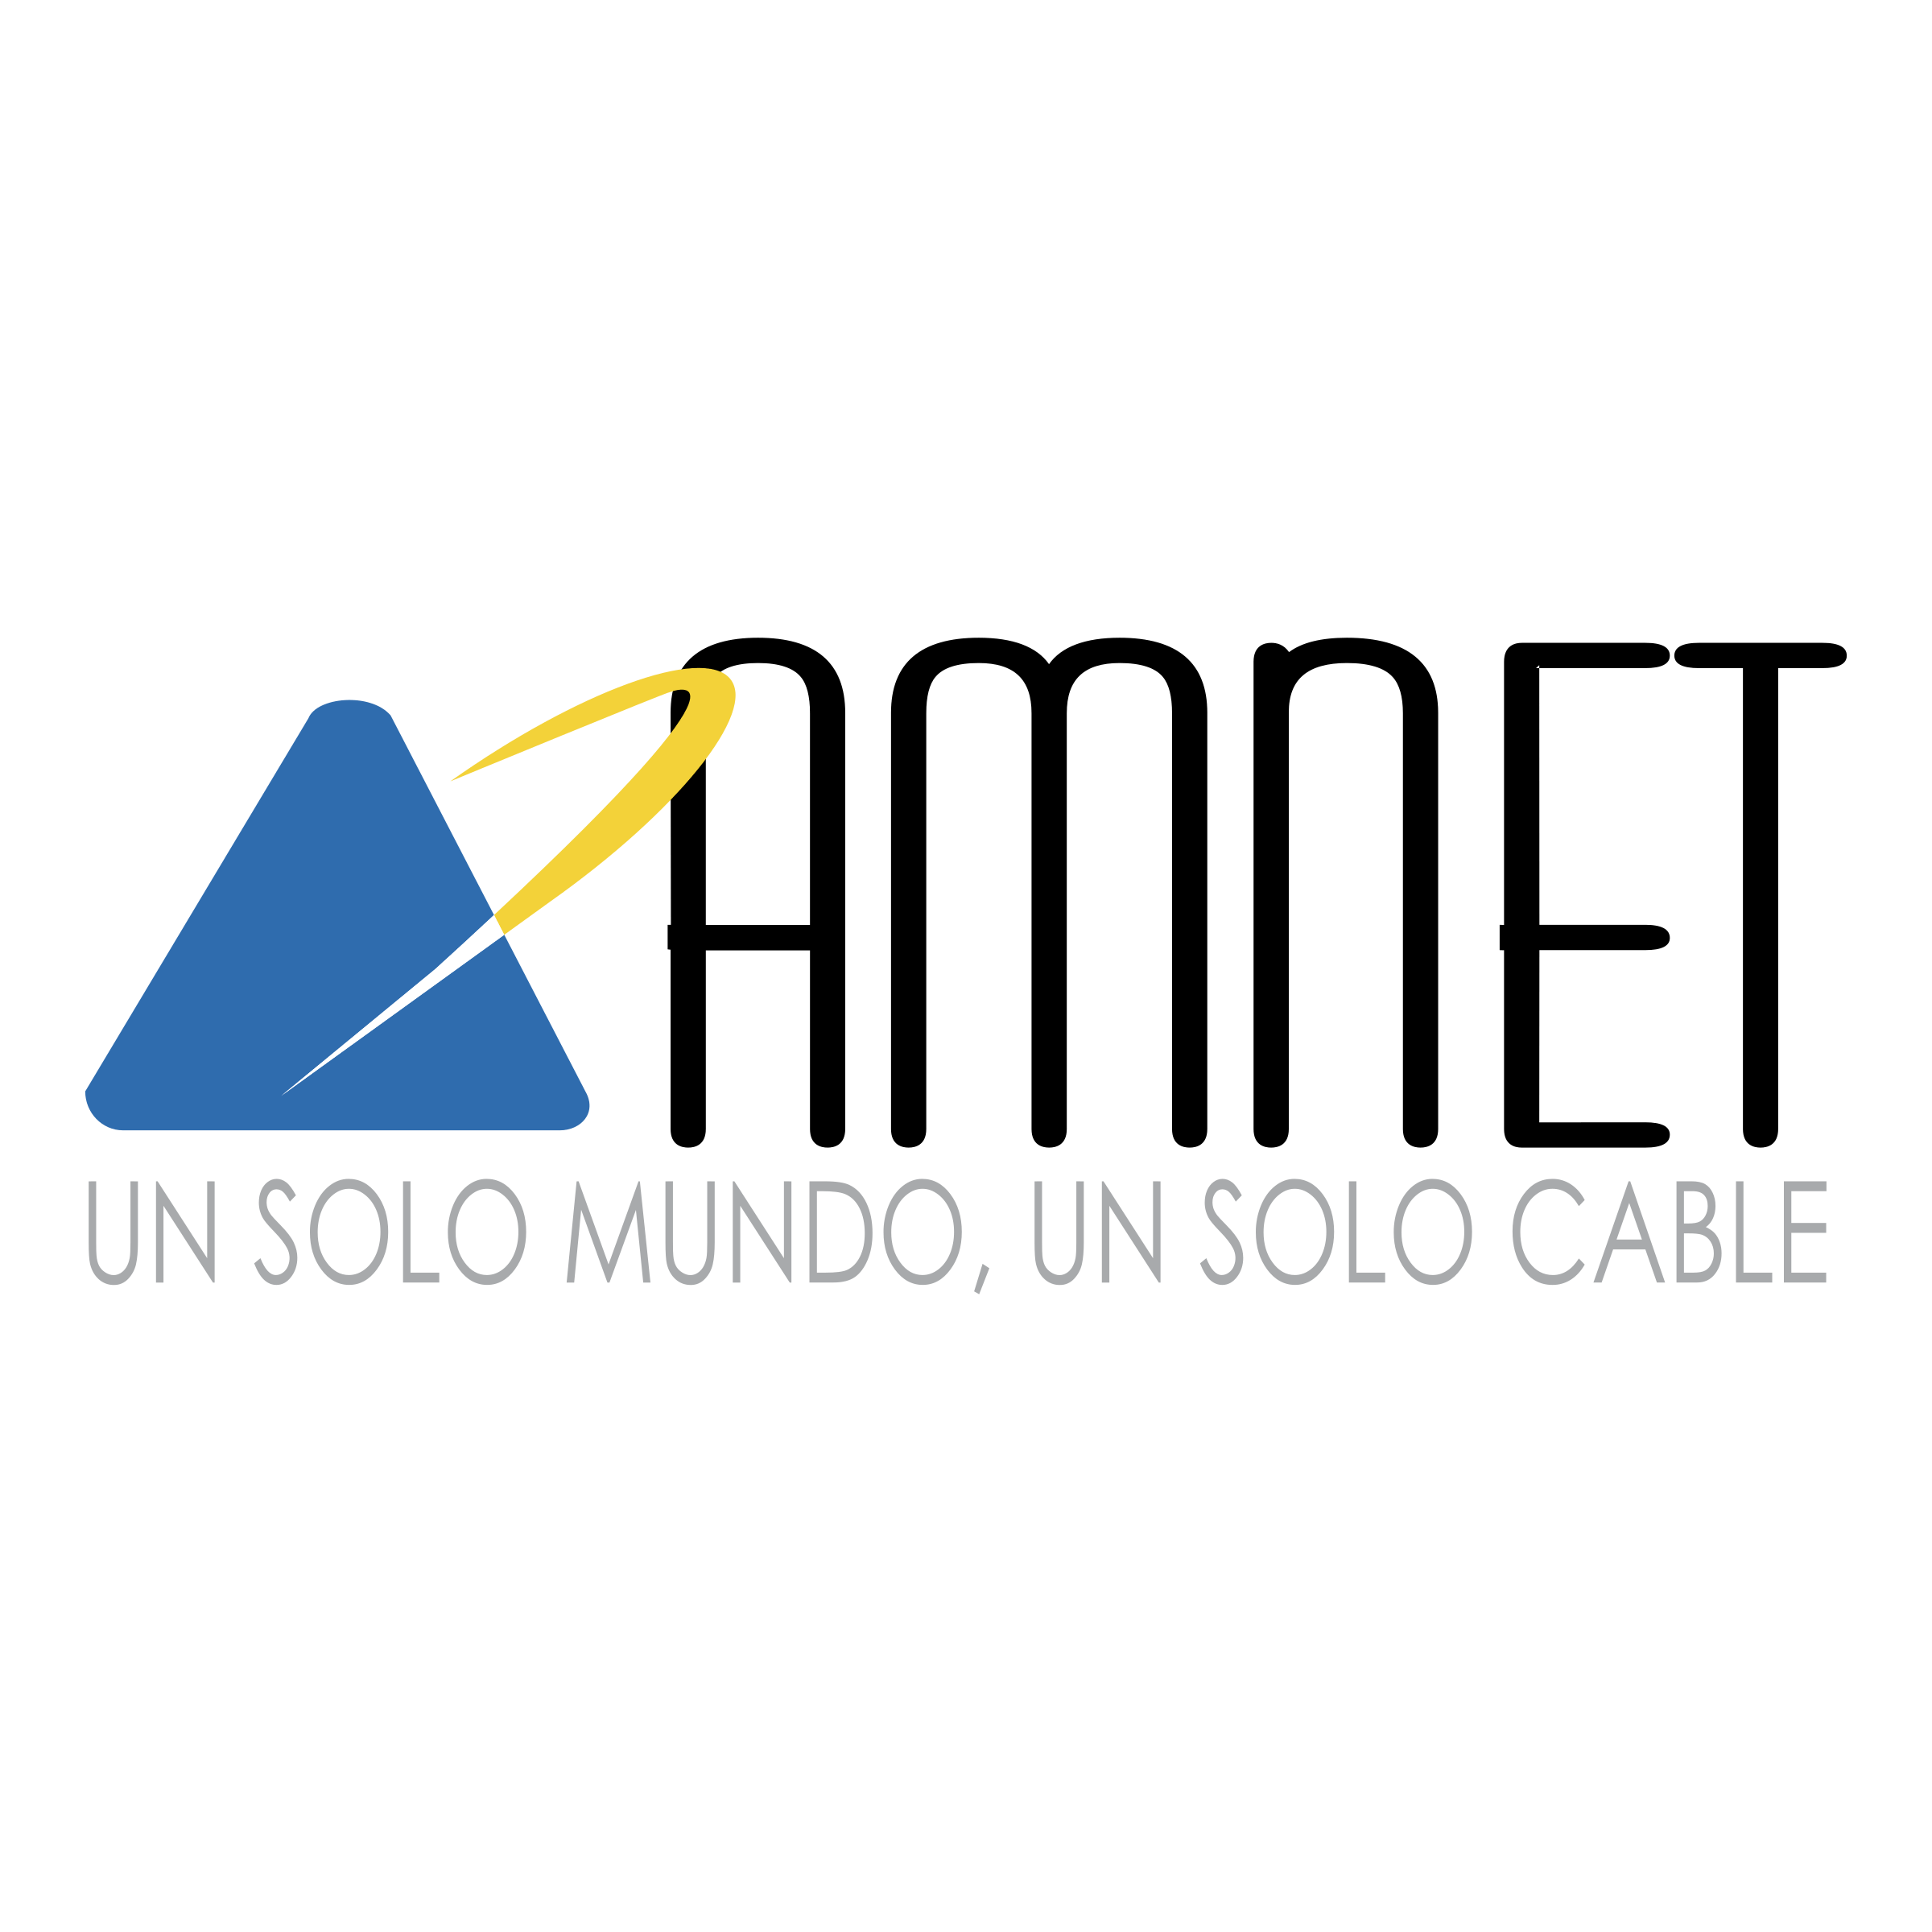 Amnet Logo - Amnet Logo PNG Transparent & SVG Vector - Freebie Supply